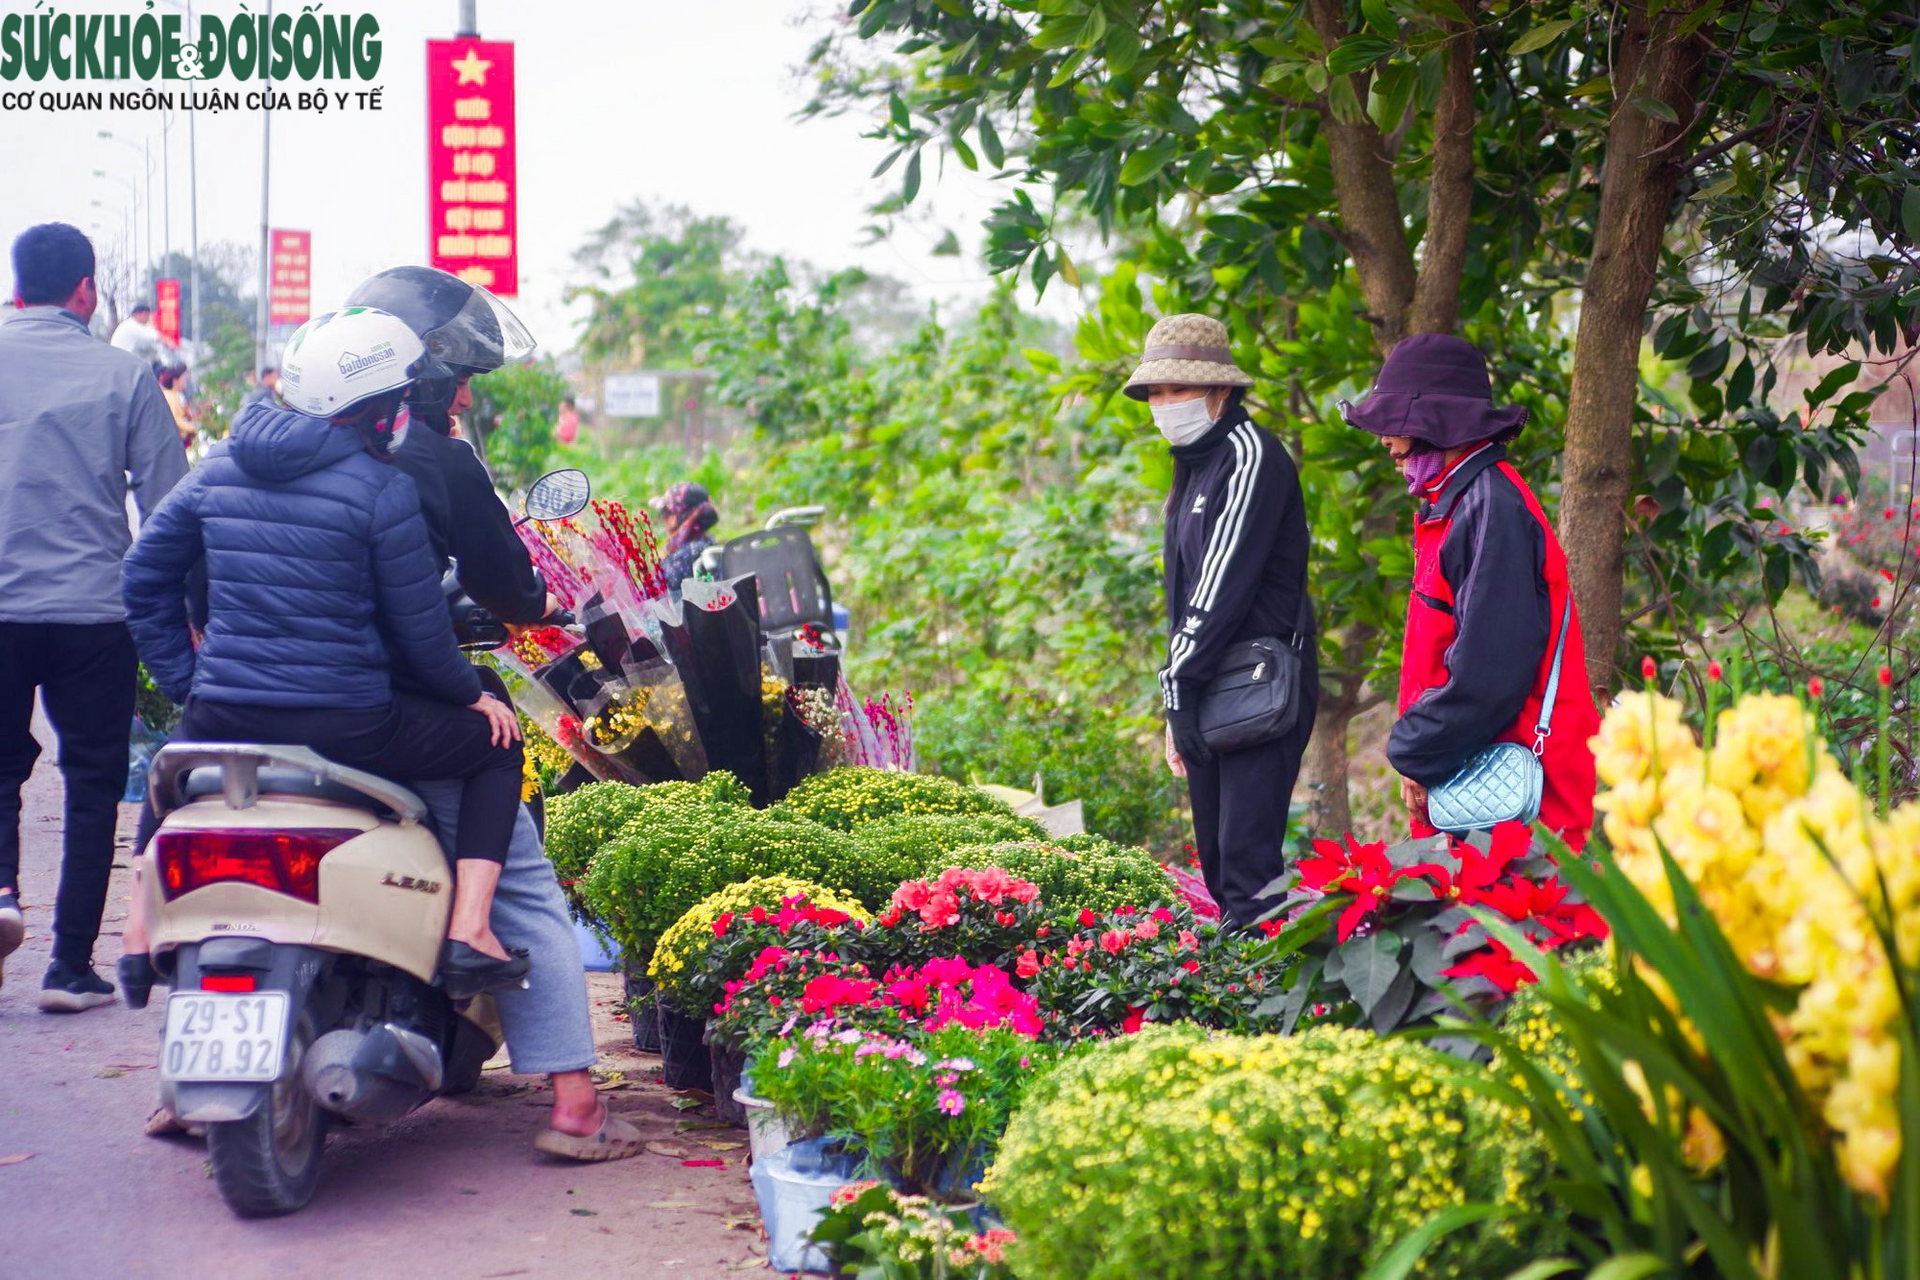 Chợ hoa lớn nhất Hà Nội hối hả phục vụ dịp cận Tết - Ảnh 6.